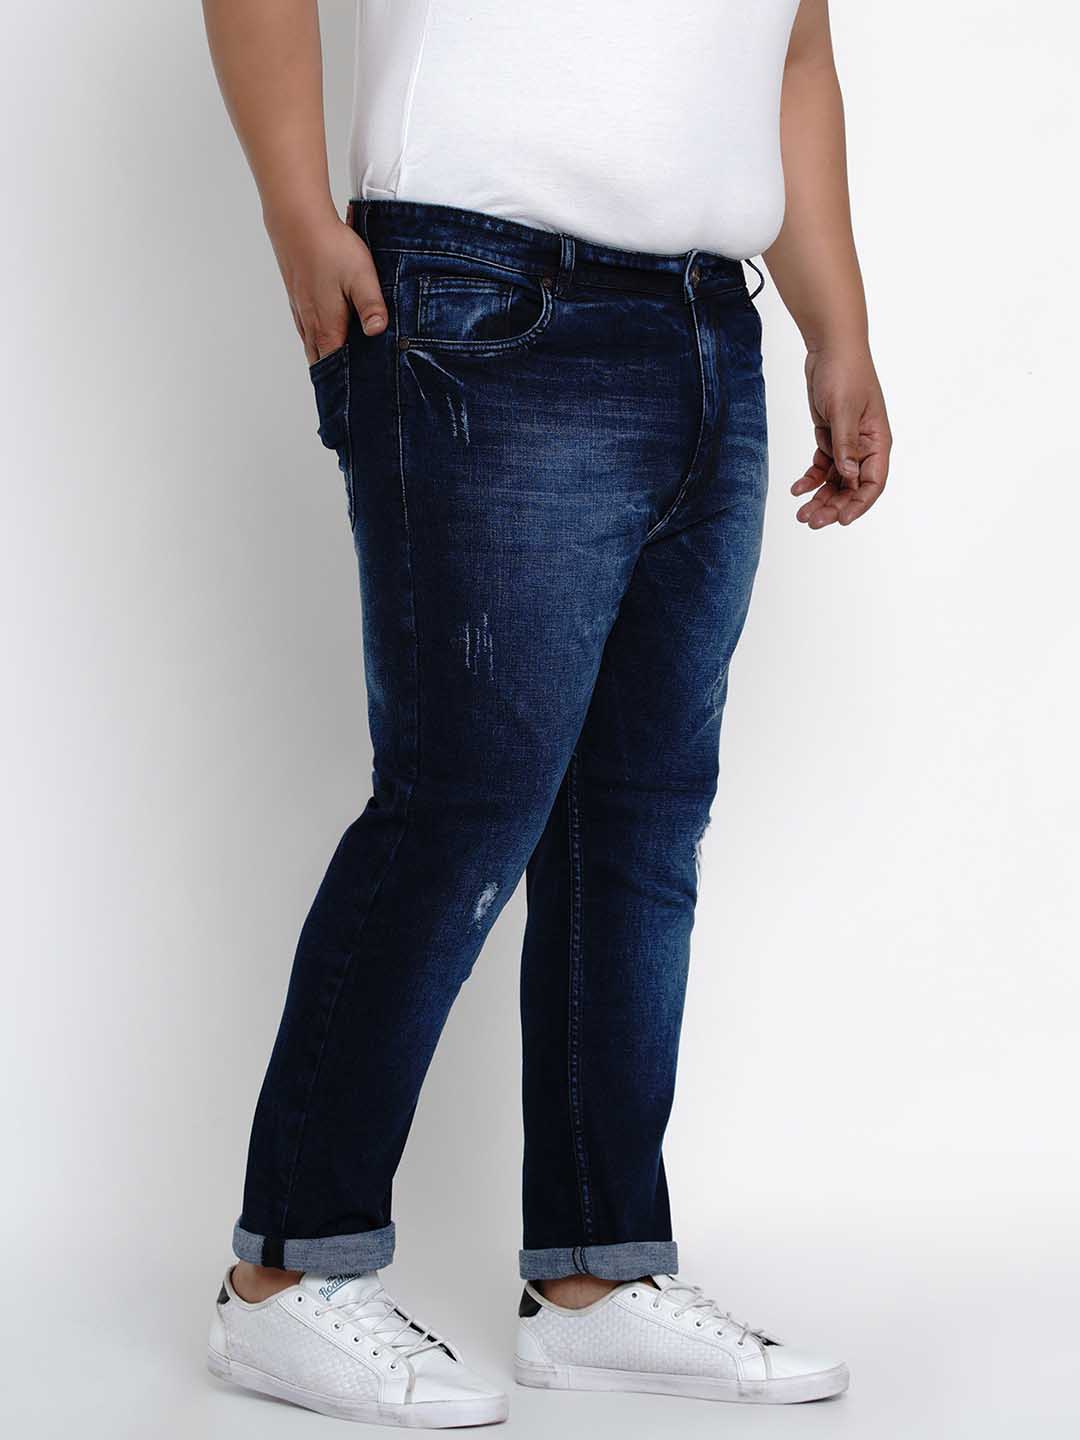 affordables/jeans/BEPLJPJ1270/bepljpj1270-3.jpg